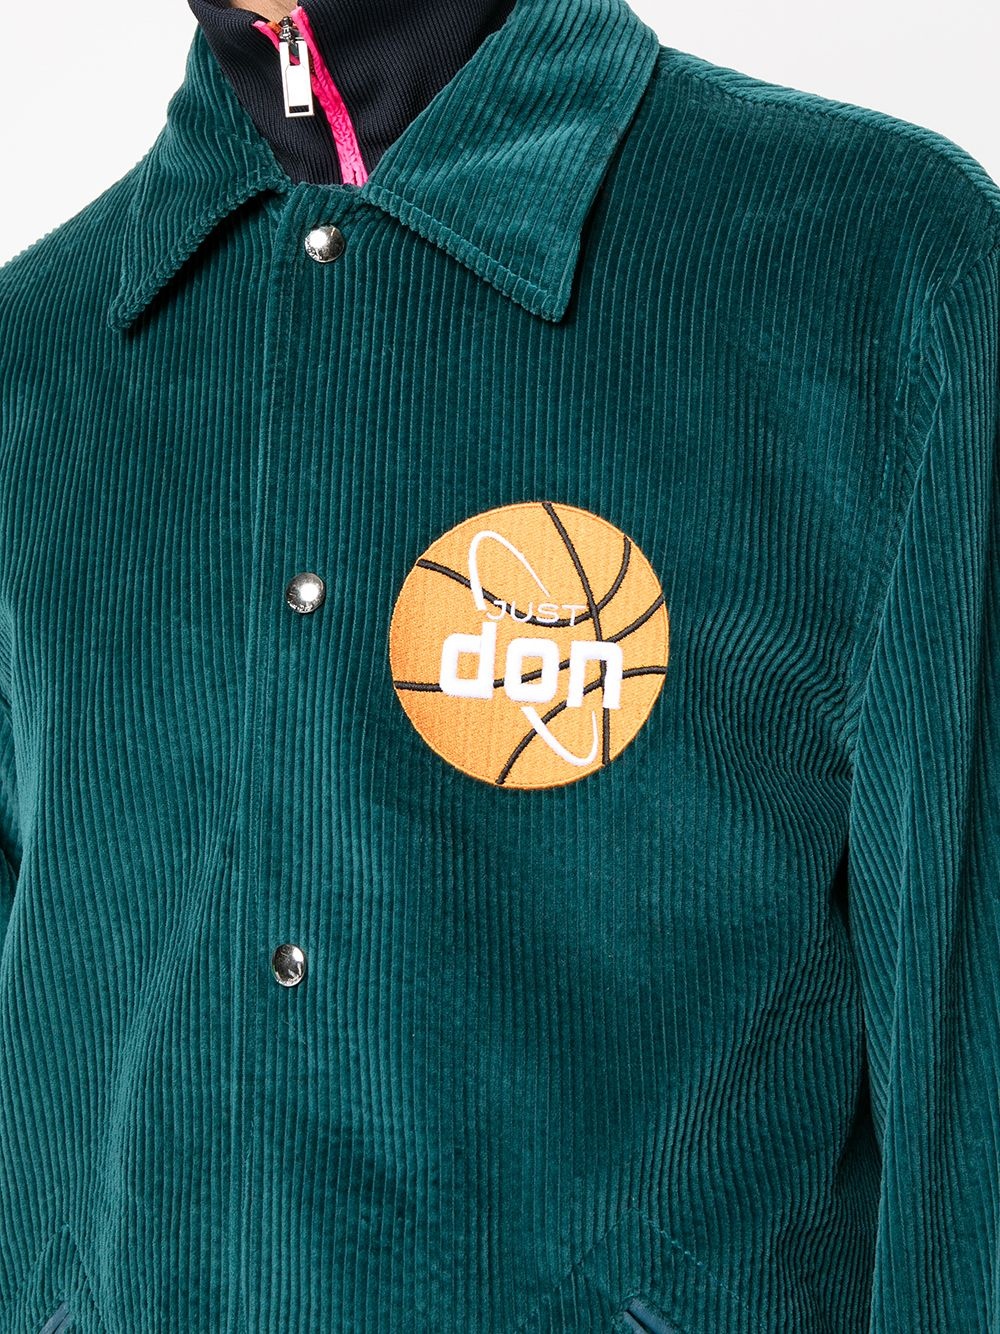 basketball corduroy jacket - 5